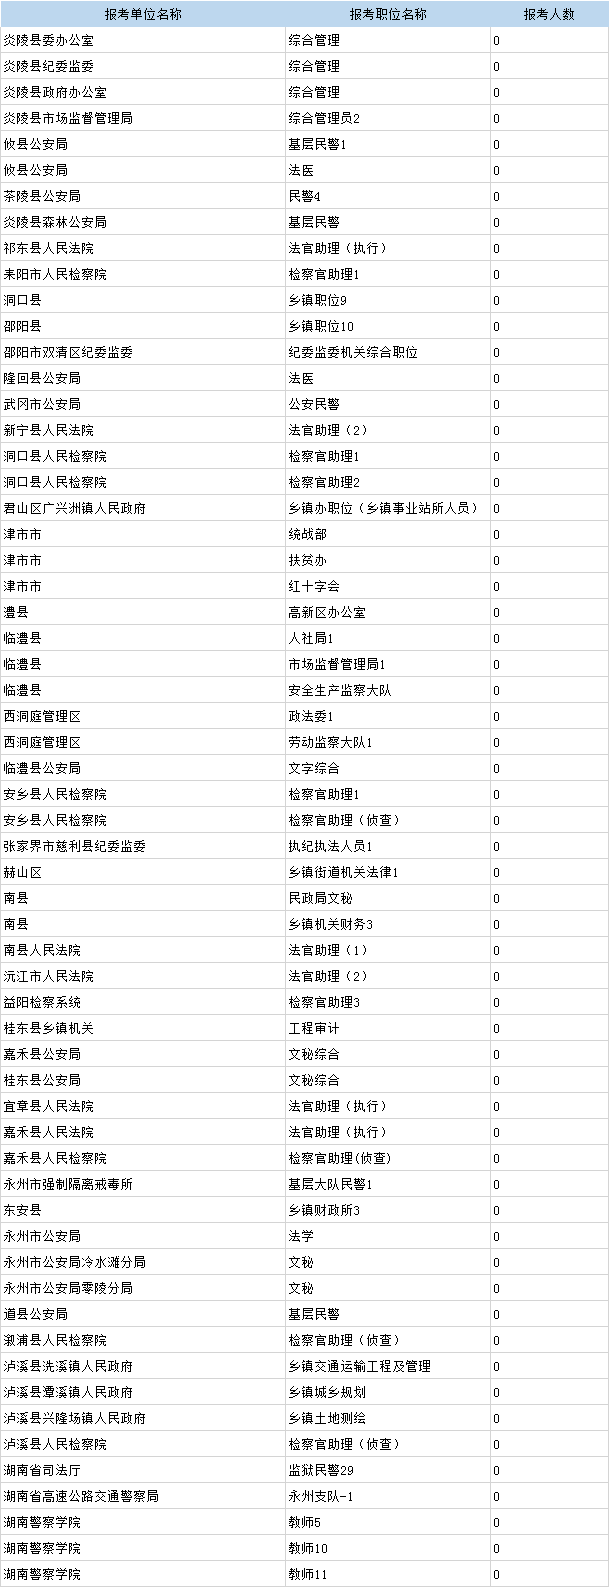 湖南省考报名人数昨日增长2万余人 总数超10万人